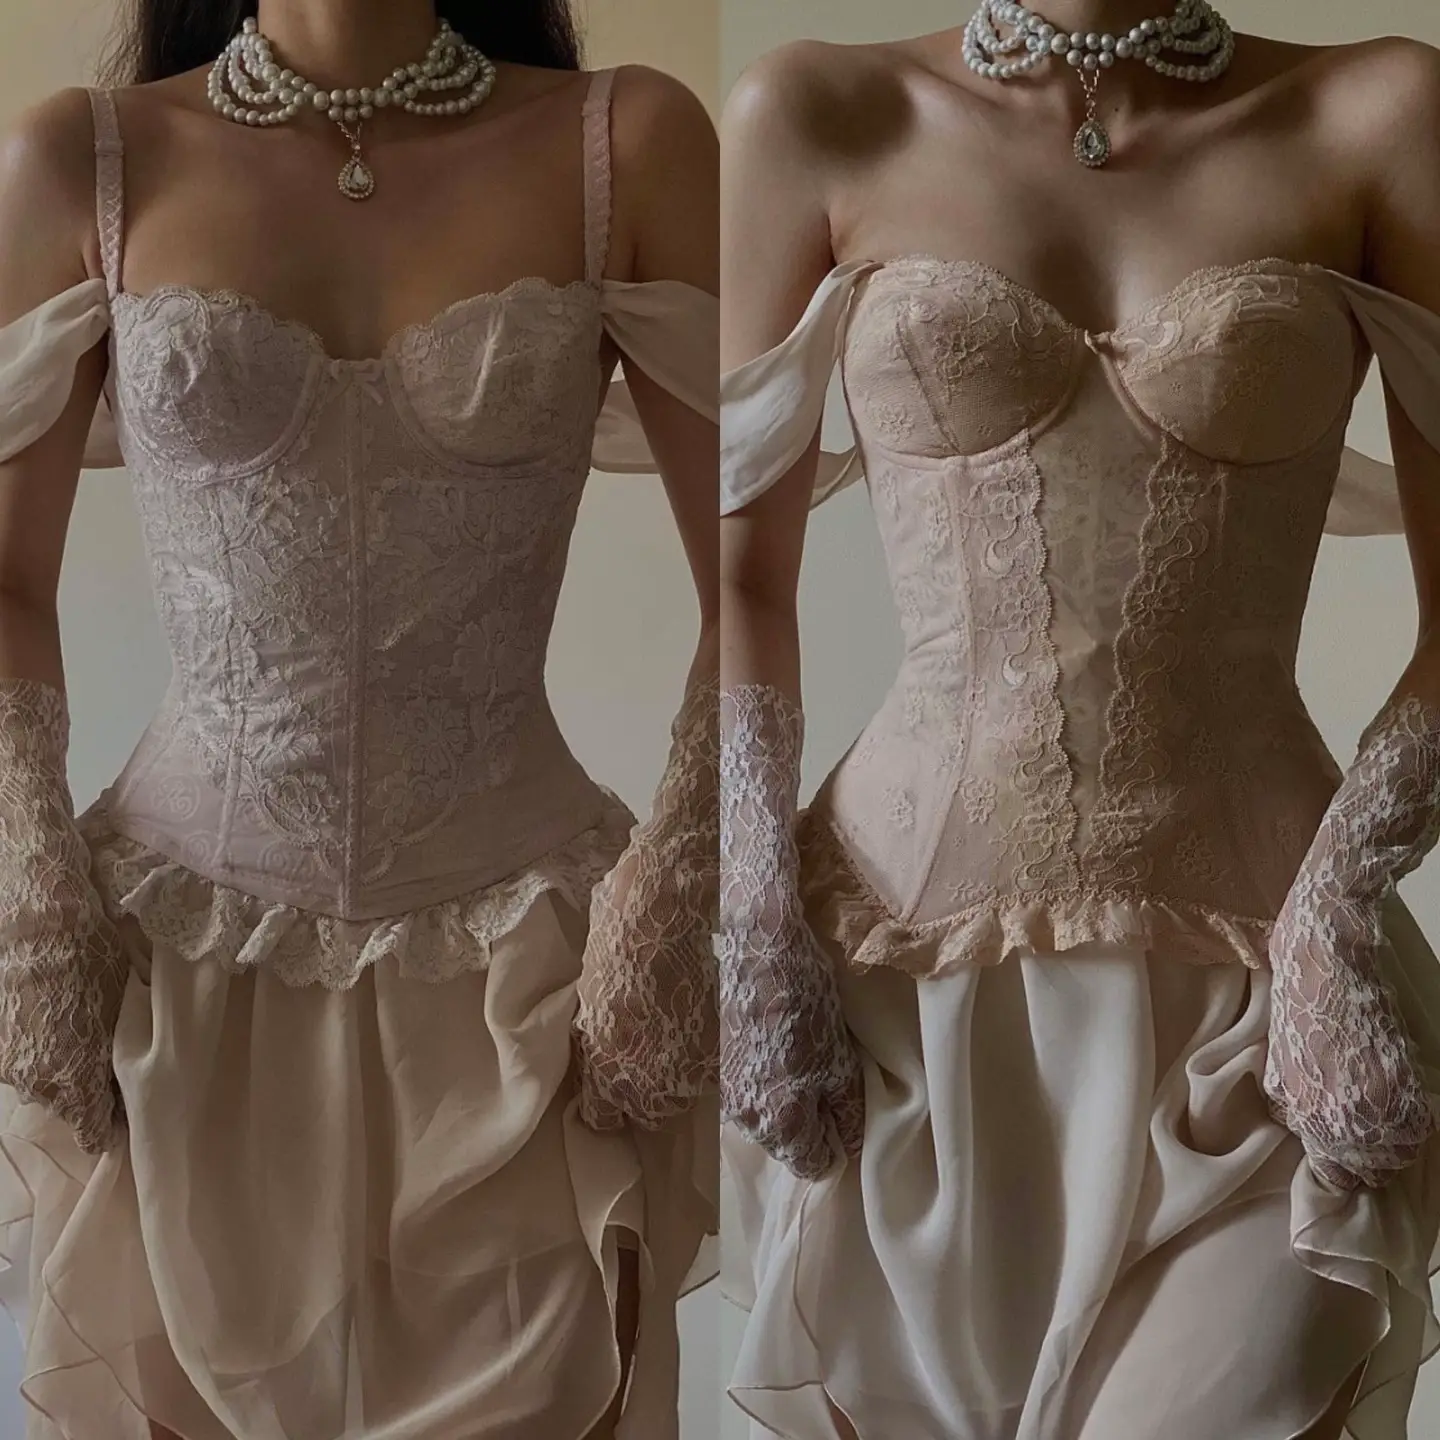 Designer shows how 'timeless' tea dress with hidden 'corset' can snatch  your waist